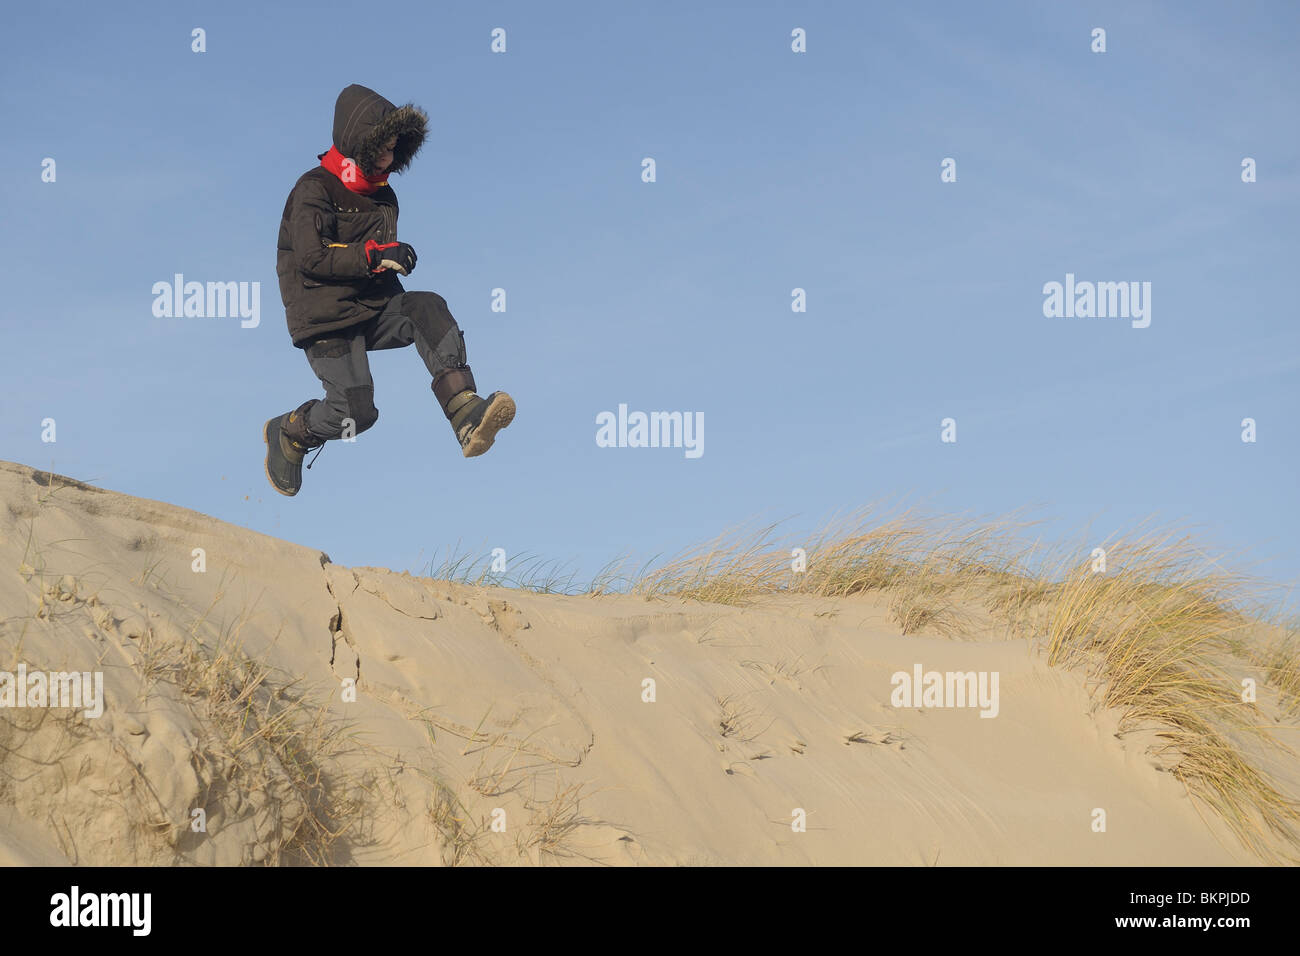 Een Jongen springt van duintop, garçon saute d'une dune Banque D'Images